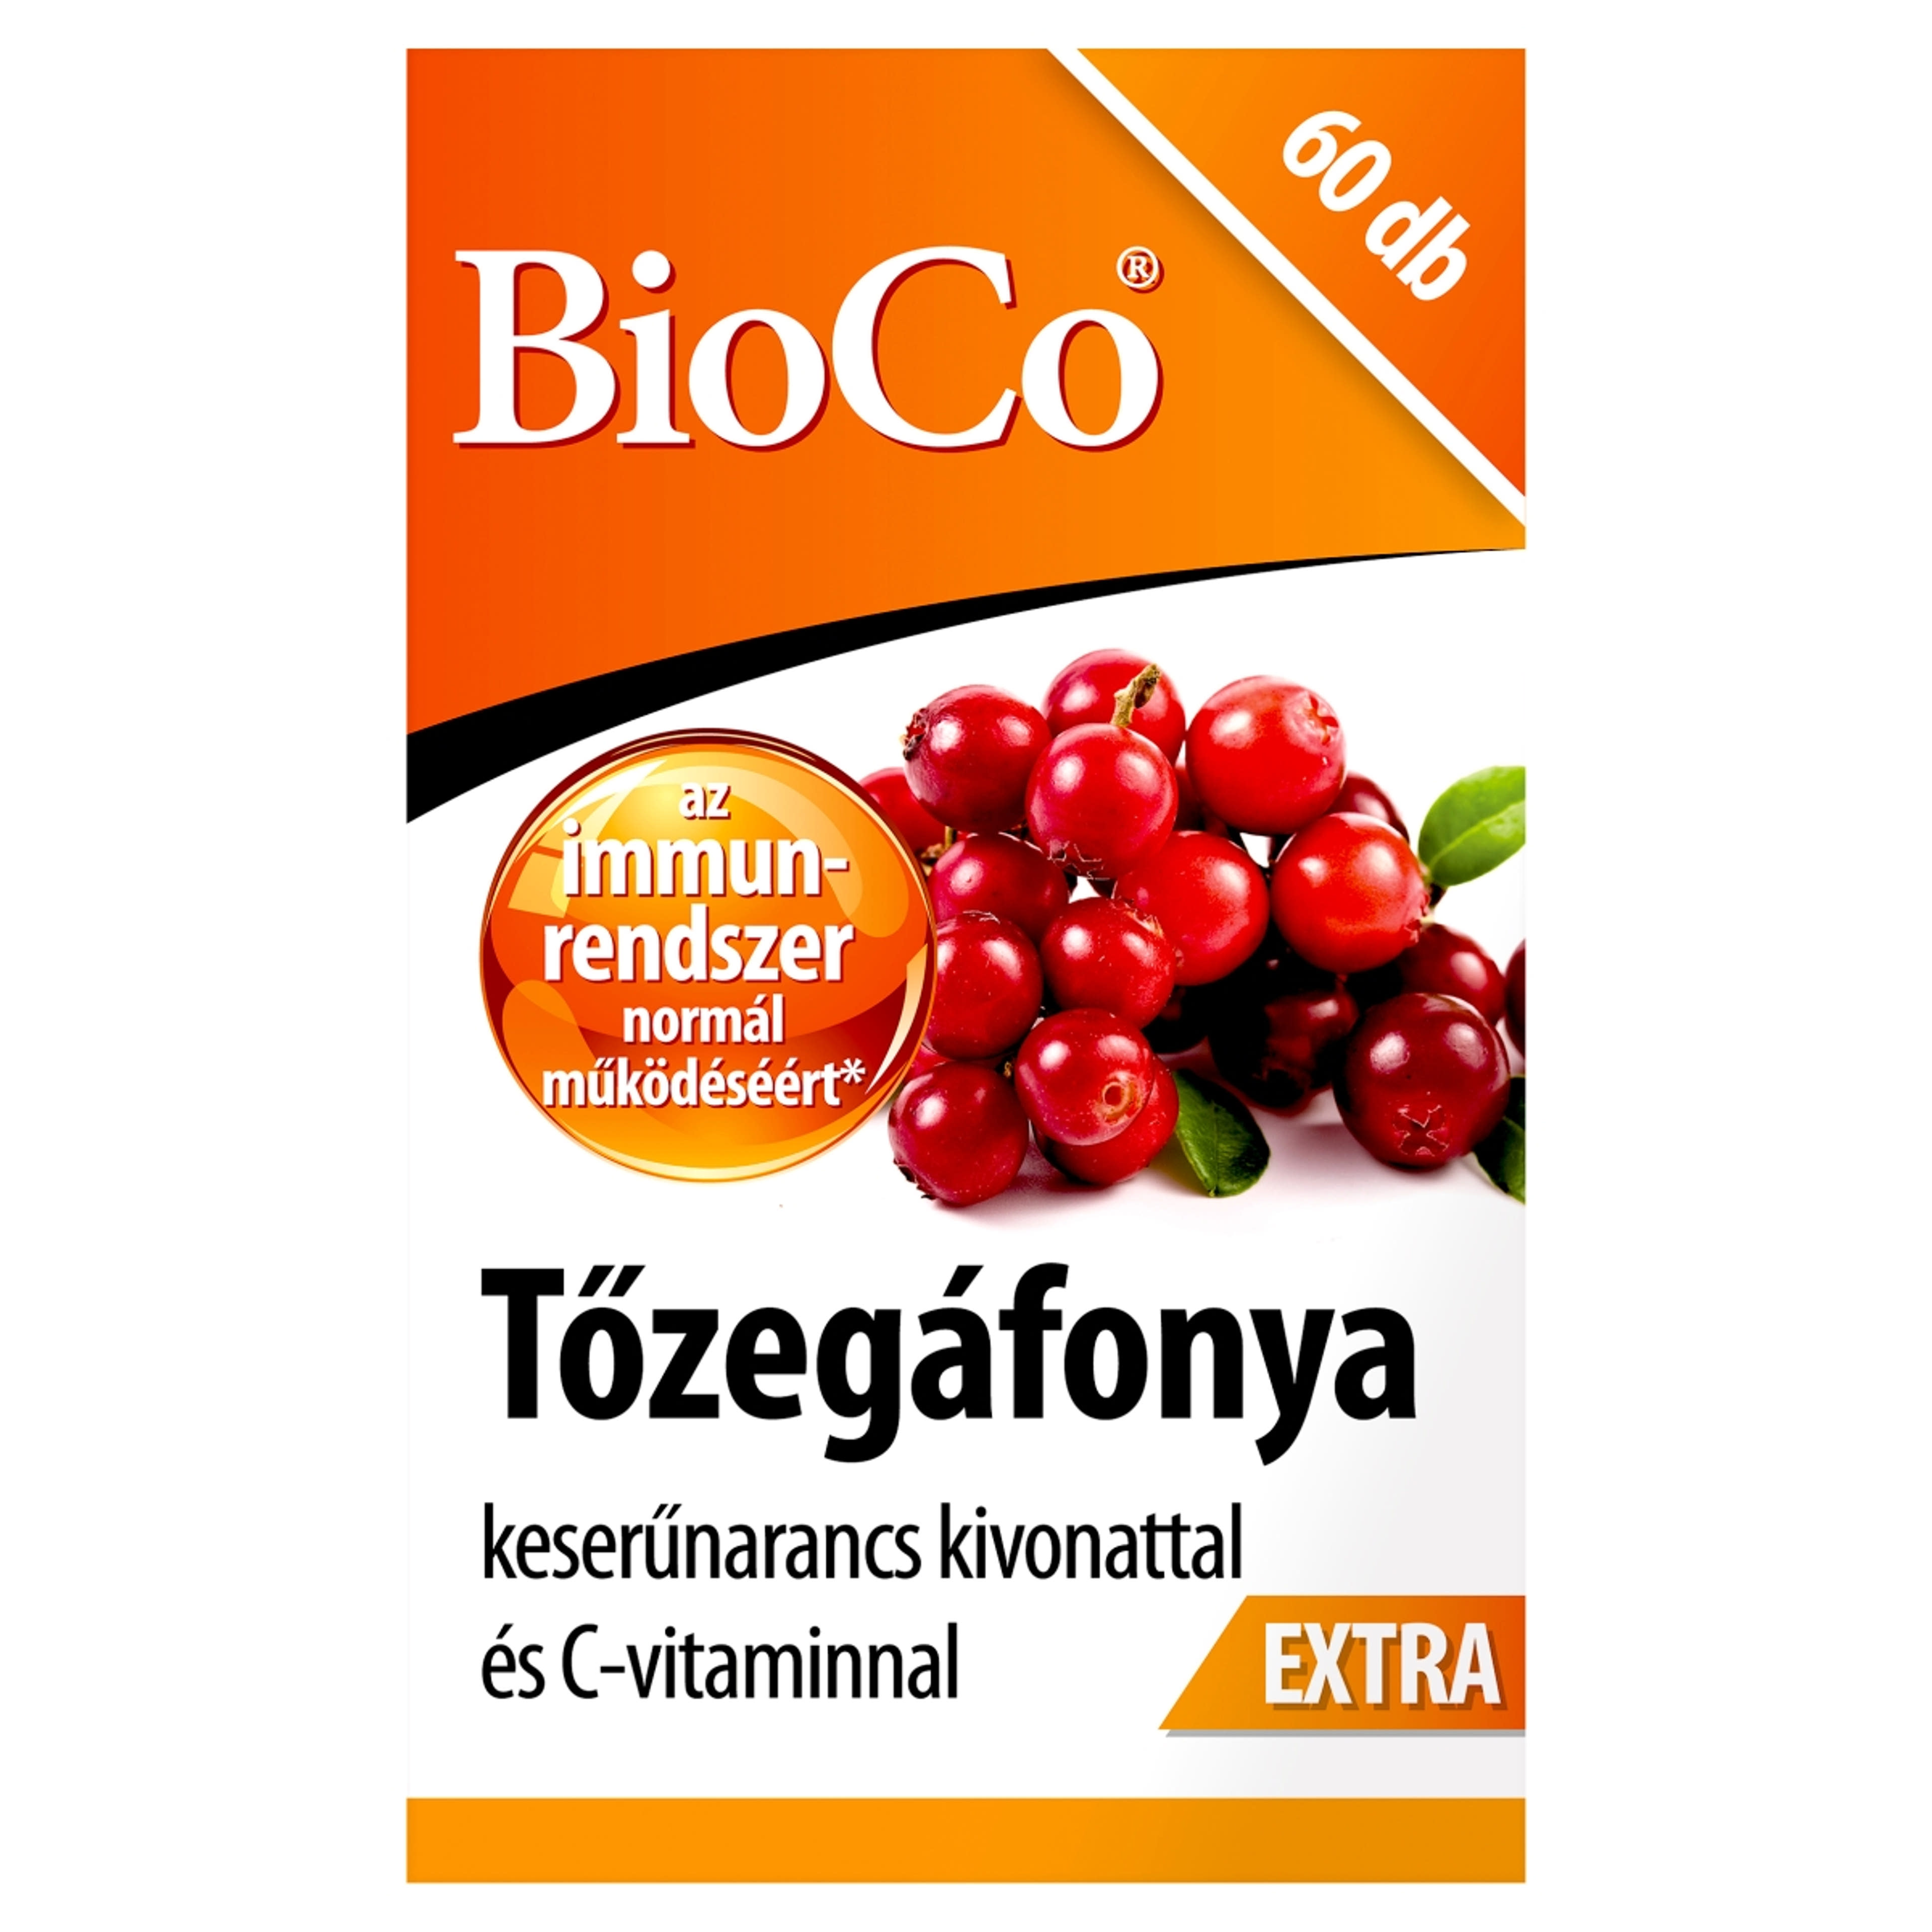 Bioco tőzegáfonya extra étrendkiegészítő tabletta - 60 db